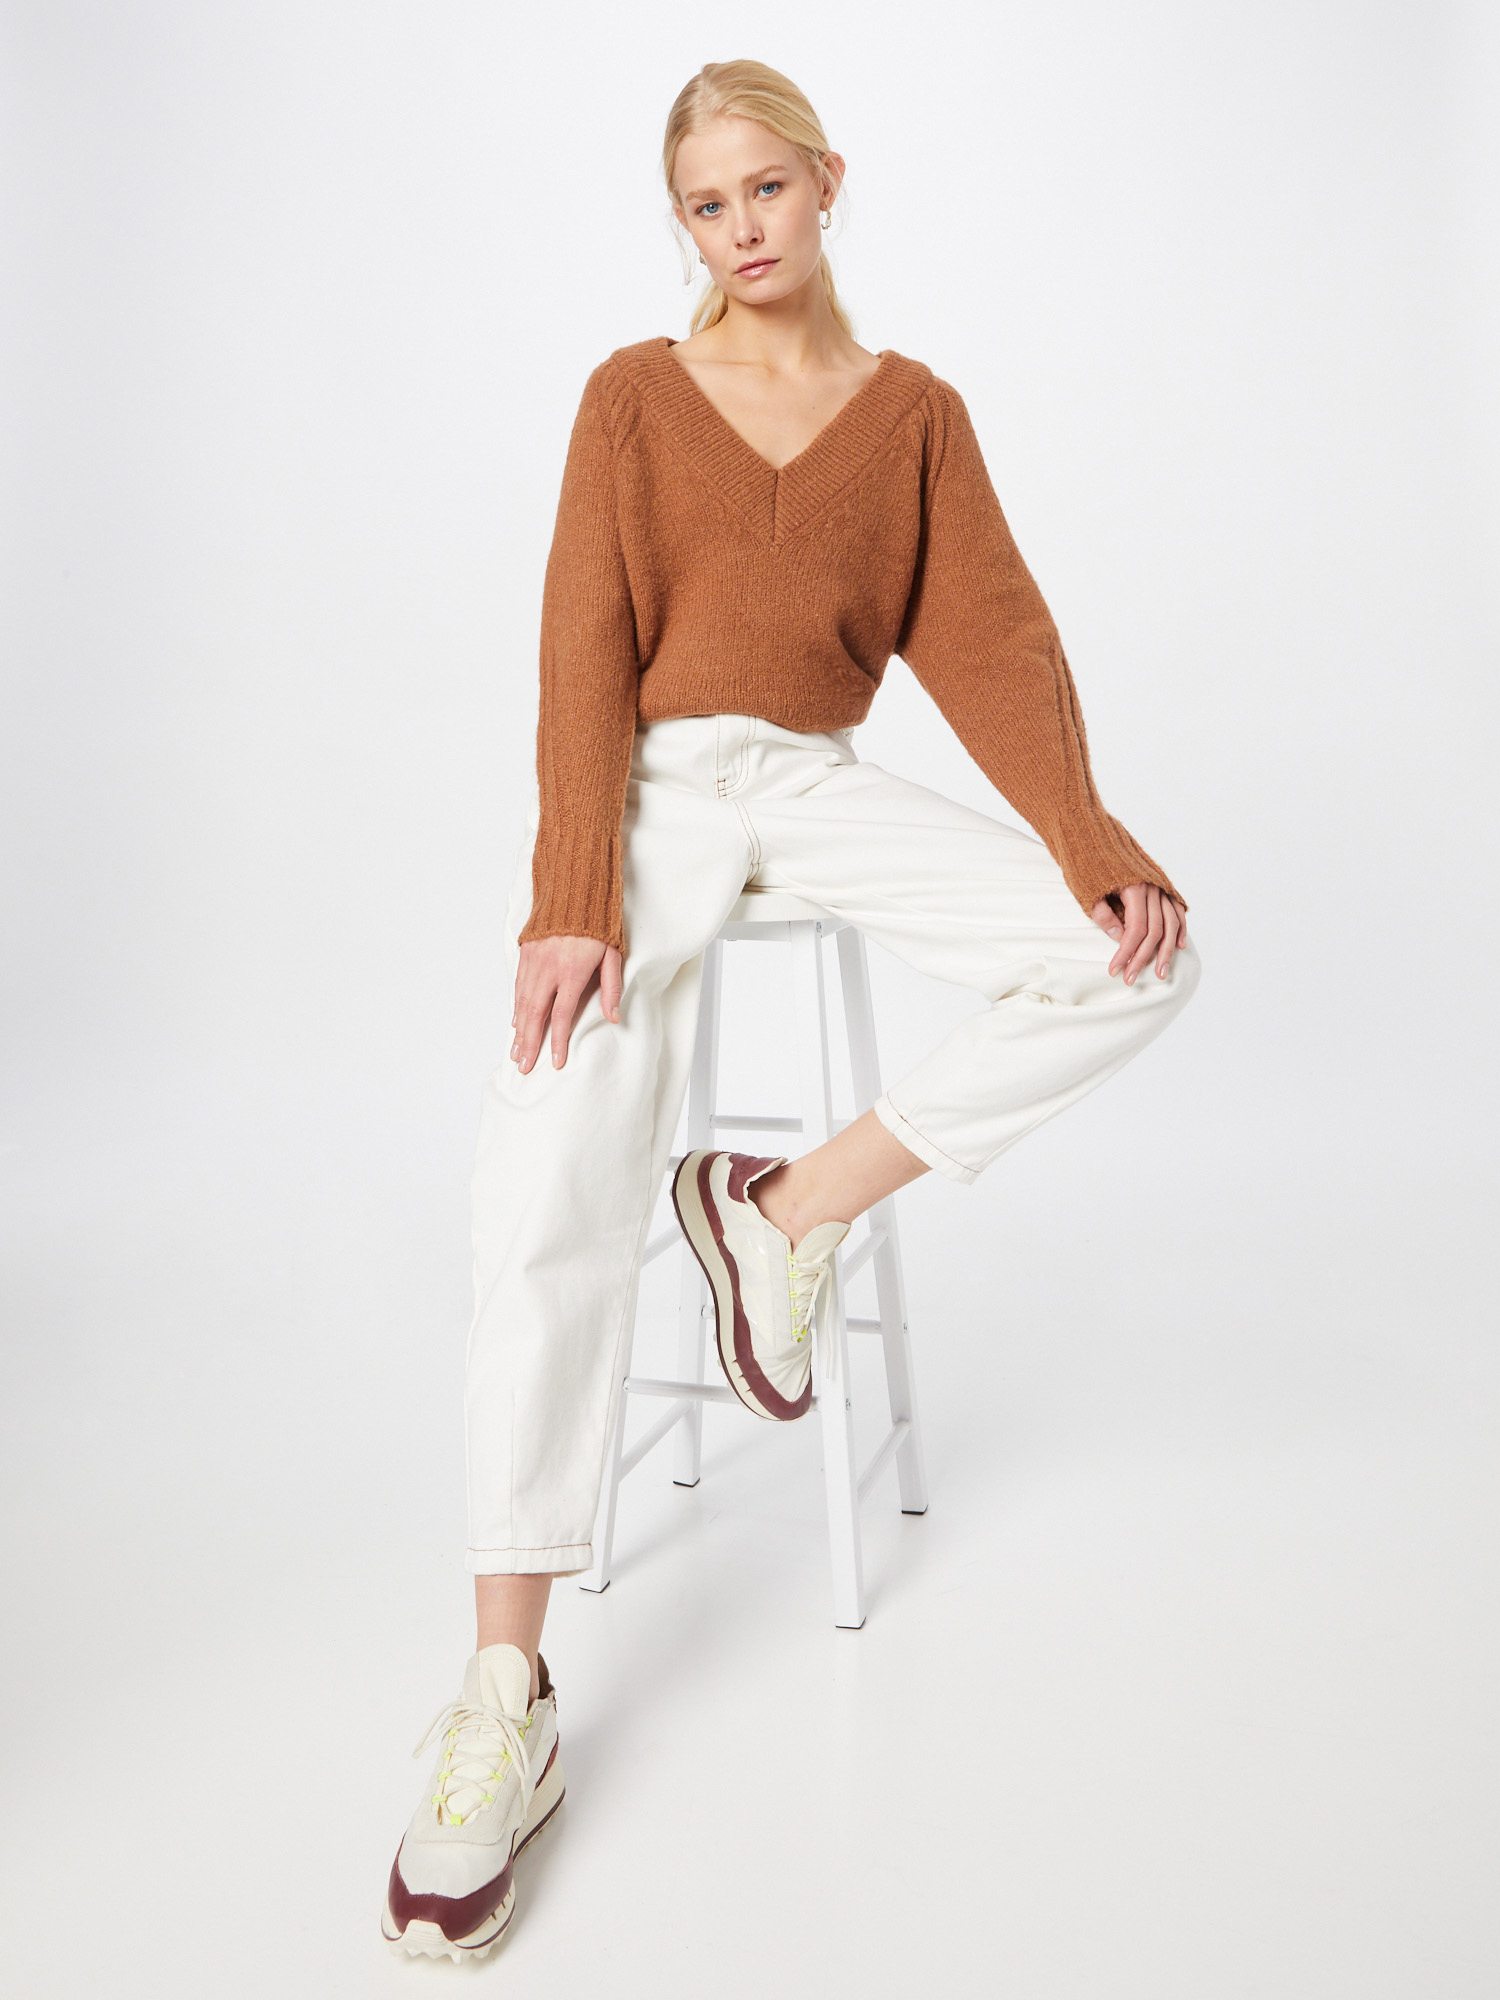 Odzież Kobiety Gina Tricot Sweter Vivian w kolorze Karmelowym 